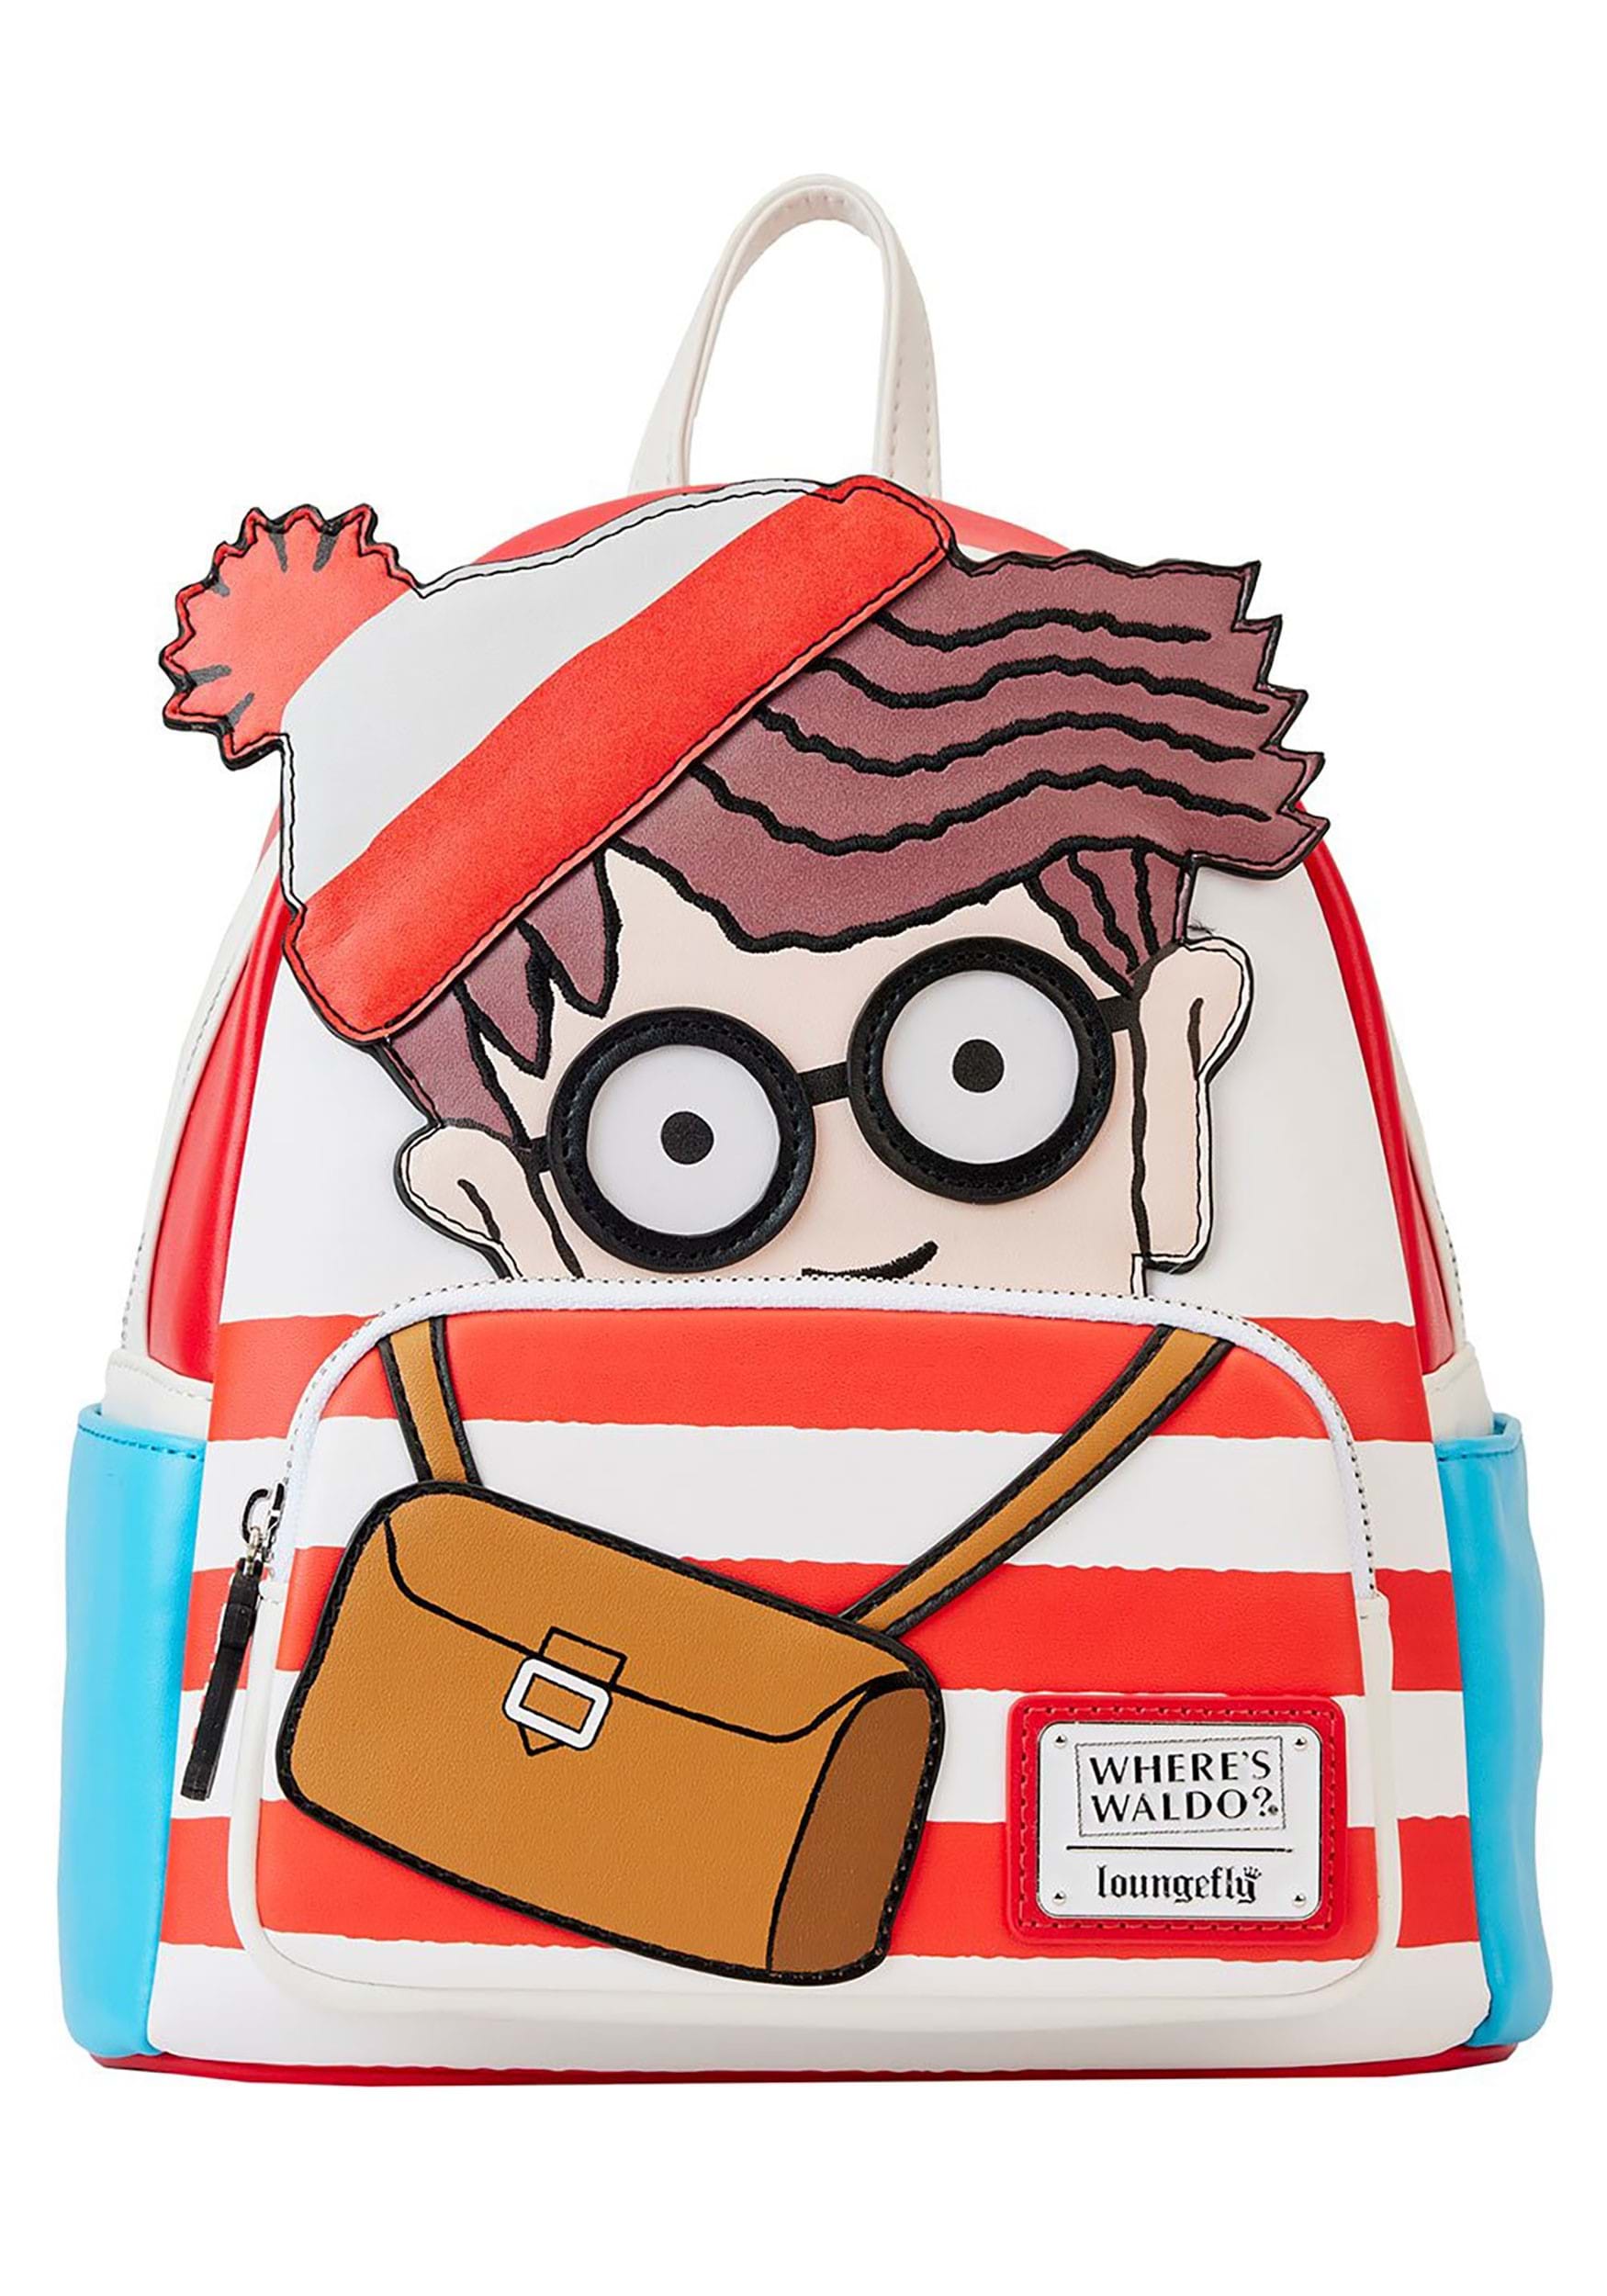 Wheres Waldo? Cosplay Loungefly Mini Backpack